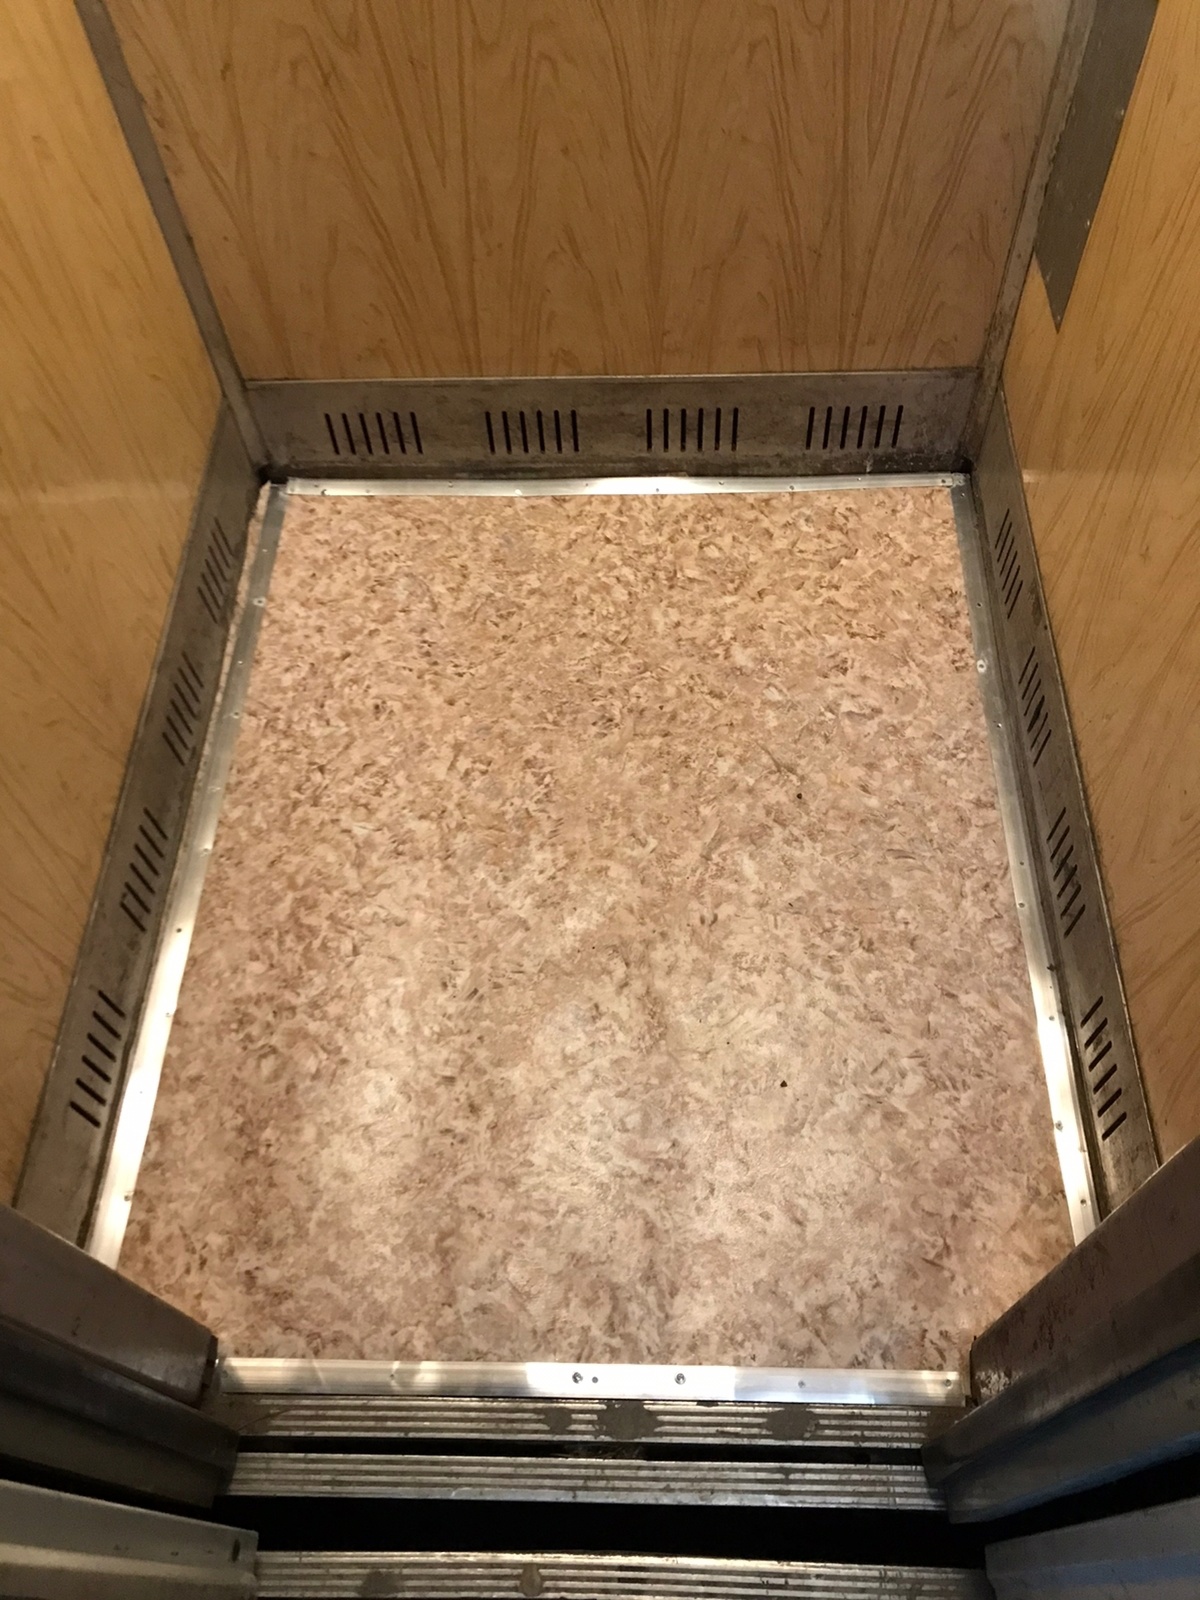 Обновление линолеума в кабинах лифтов МКД.
В лифтовых кабинах по адресам: 250 лет Челябинска 9, Чичерина 35 б УК 